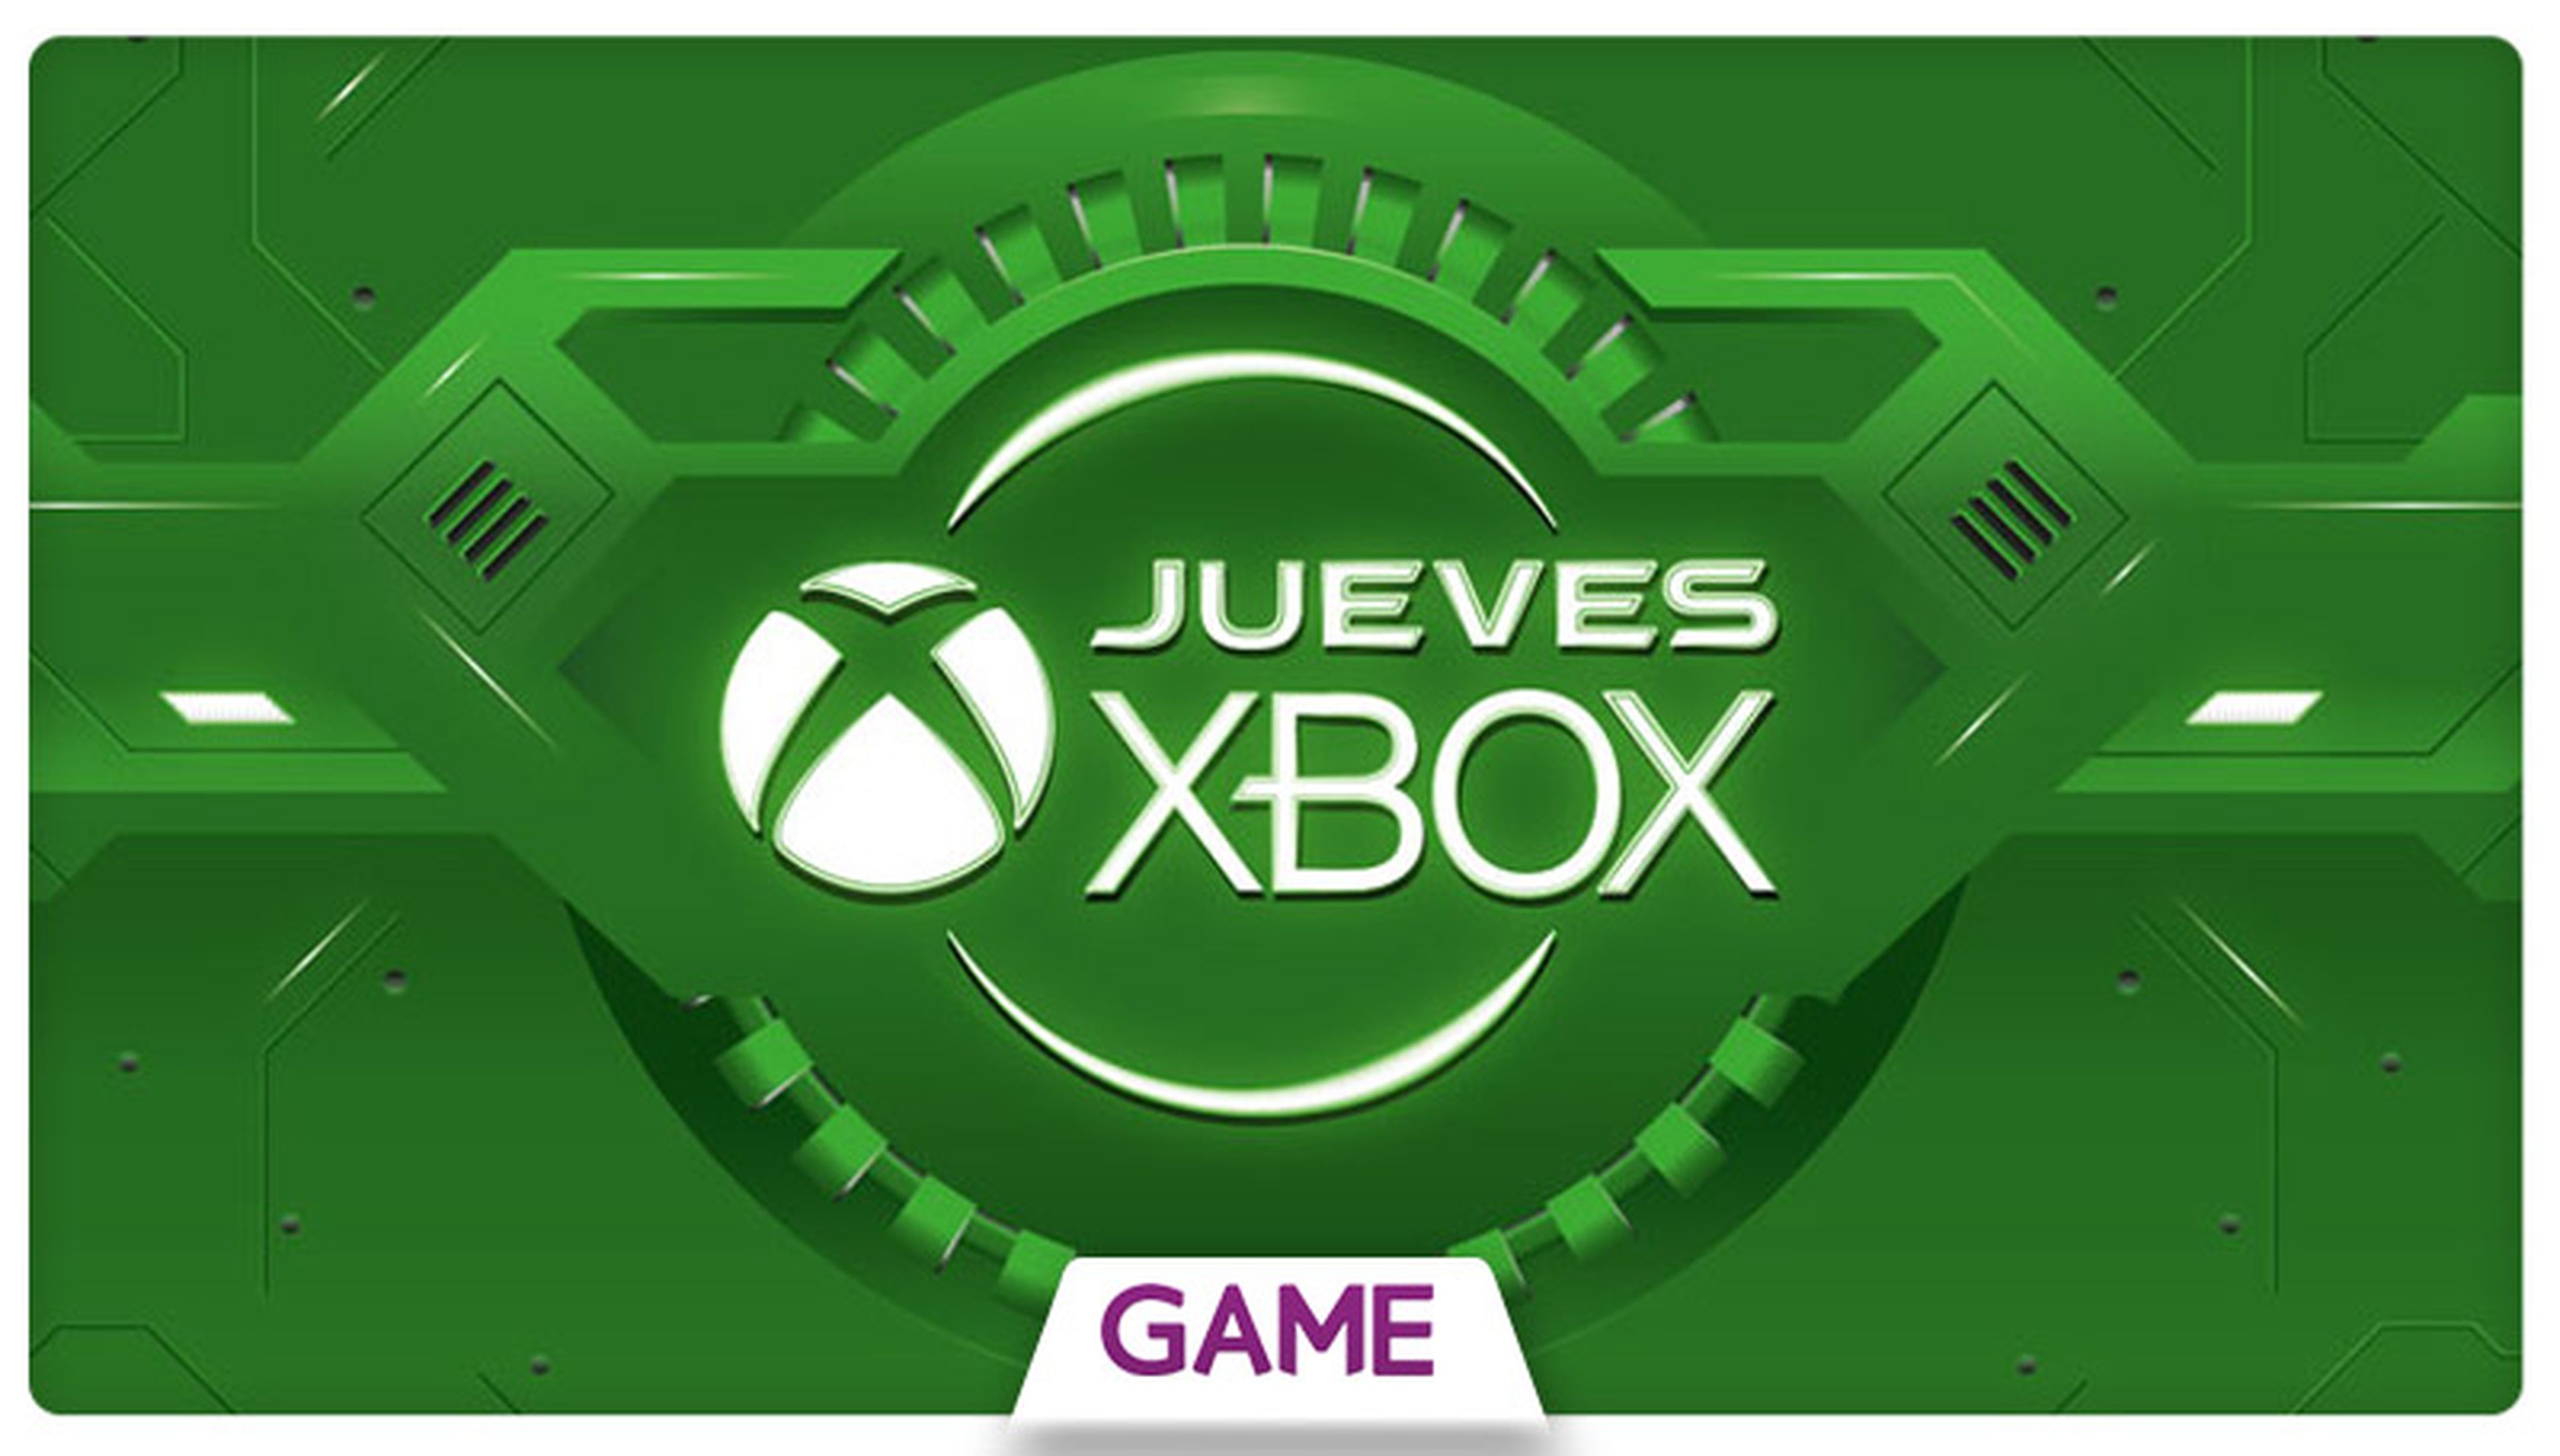 Jueves Xbox en GAME: Decimocuarta semana de ofertas